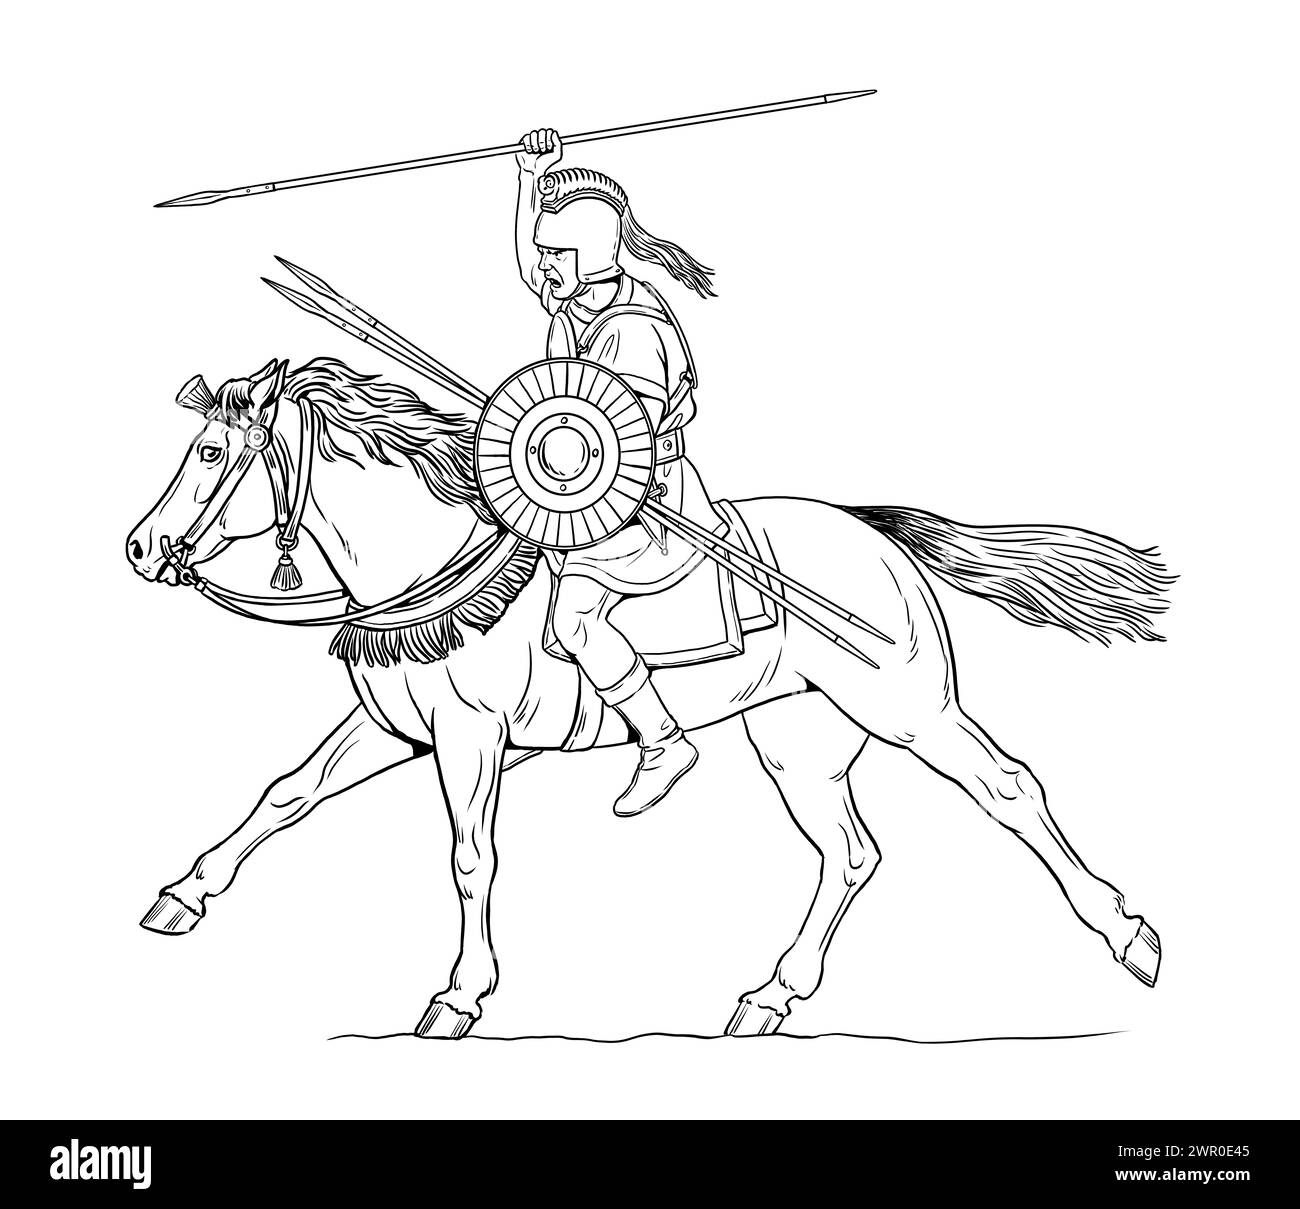 Der alte iberische Reiter im Angriff. Antike und mittelalterliche Kavallerie Zeichnung. Stockfoto